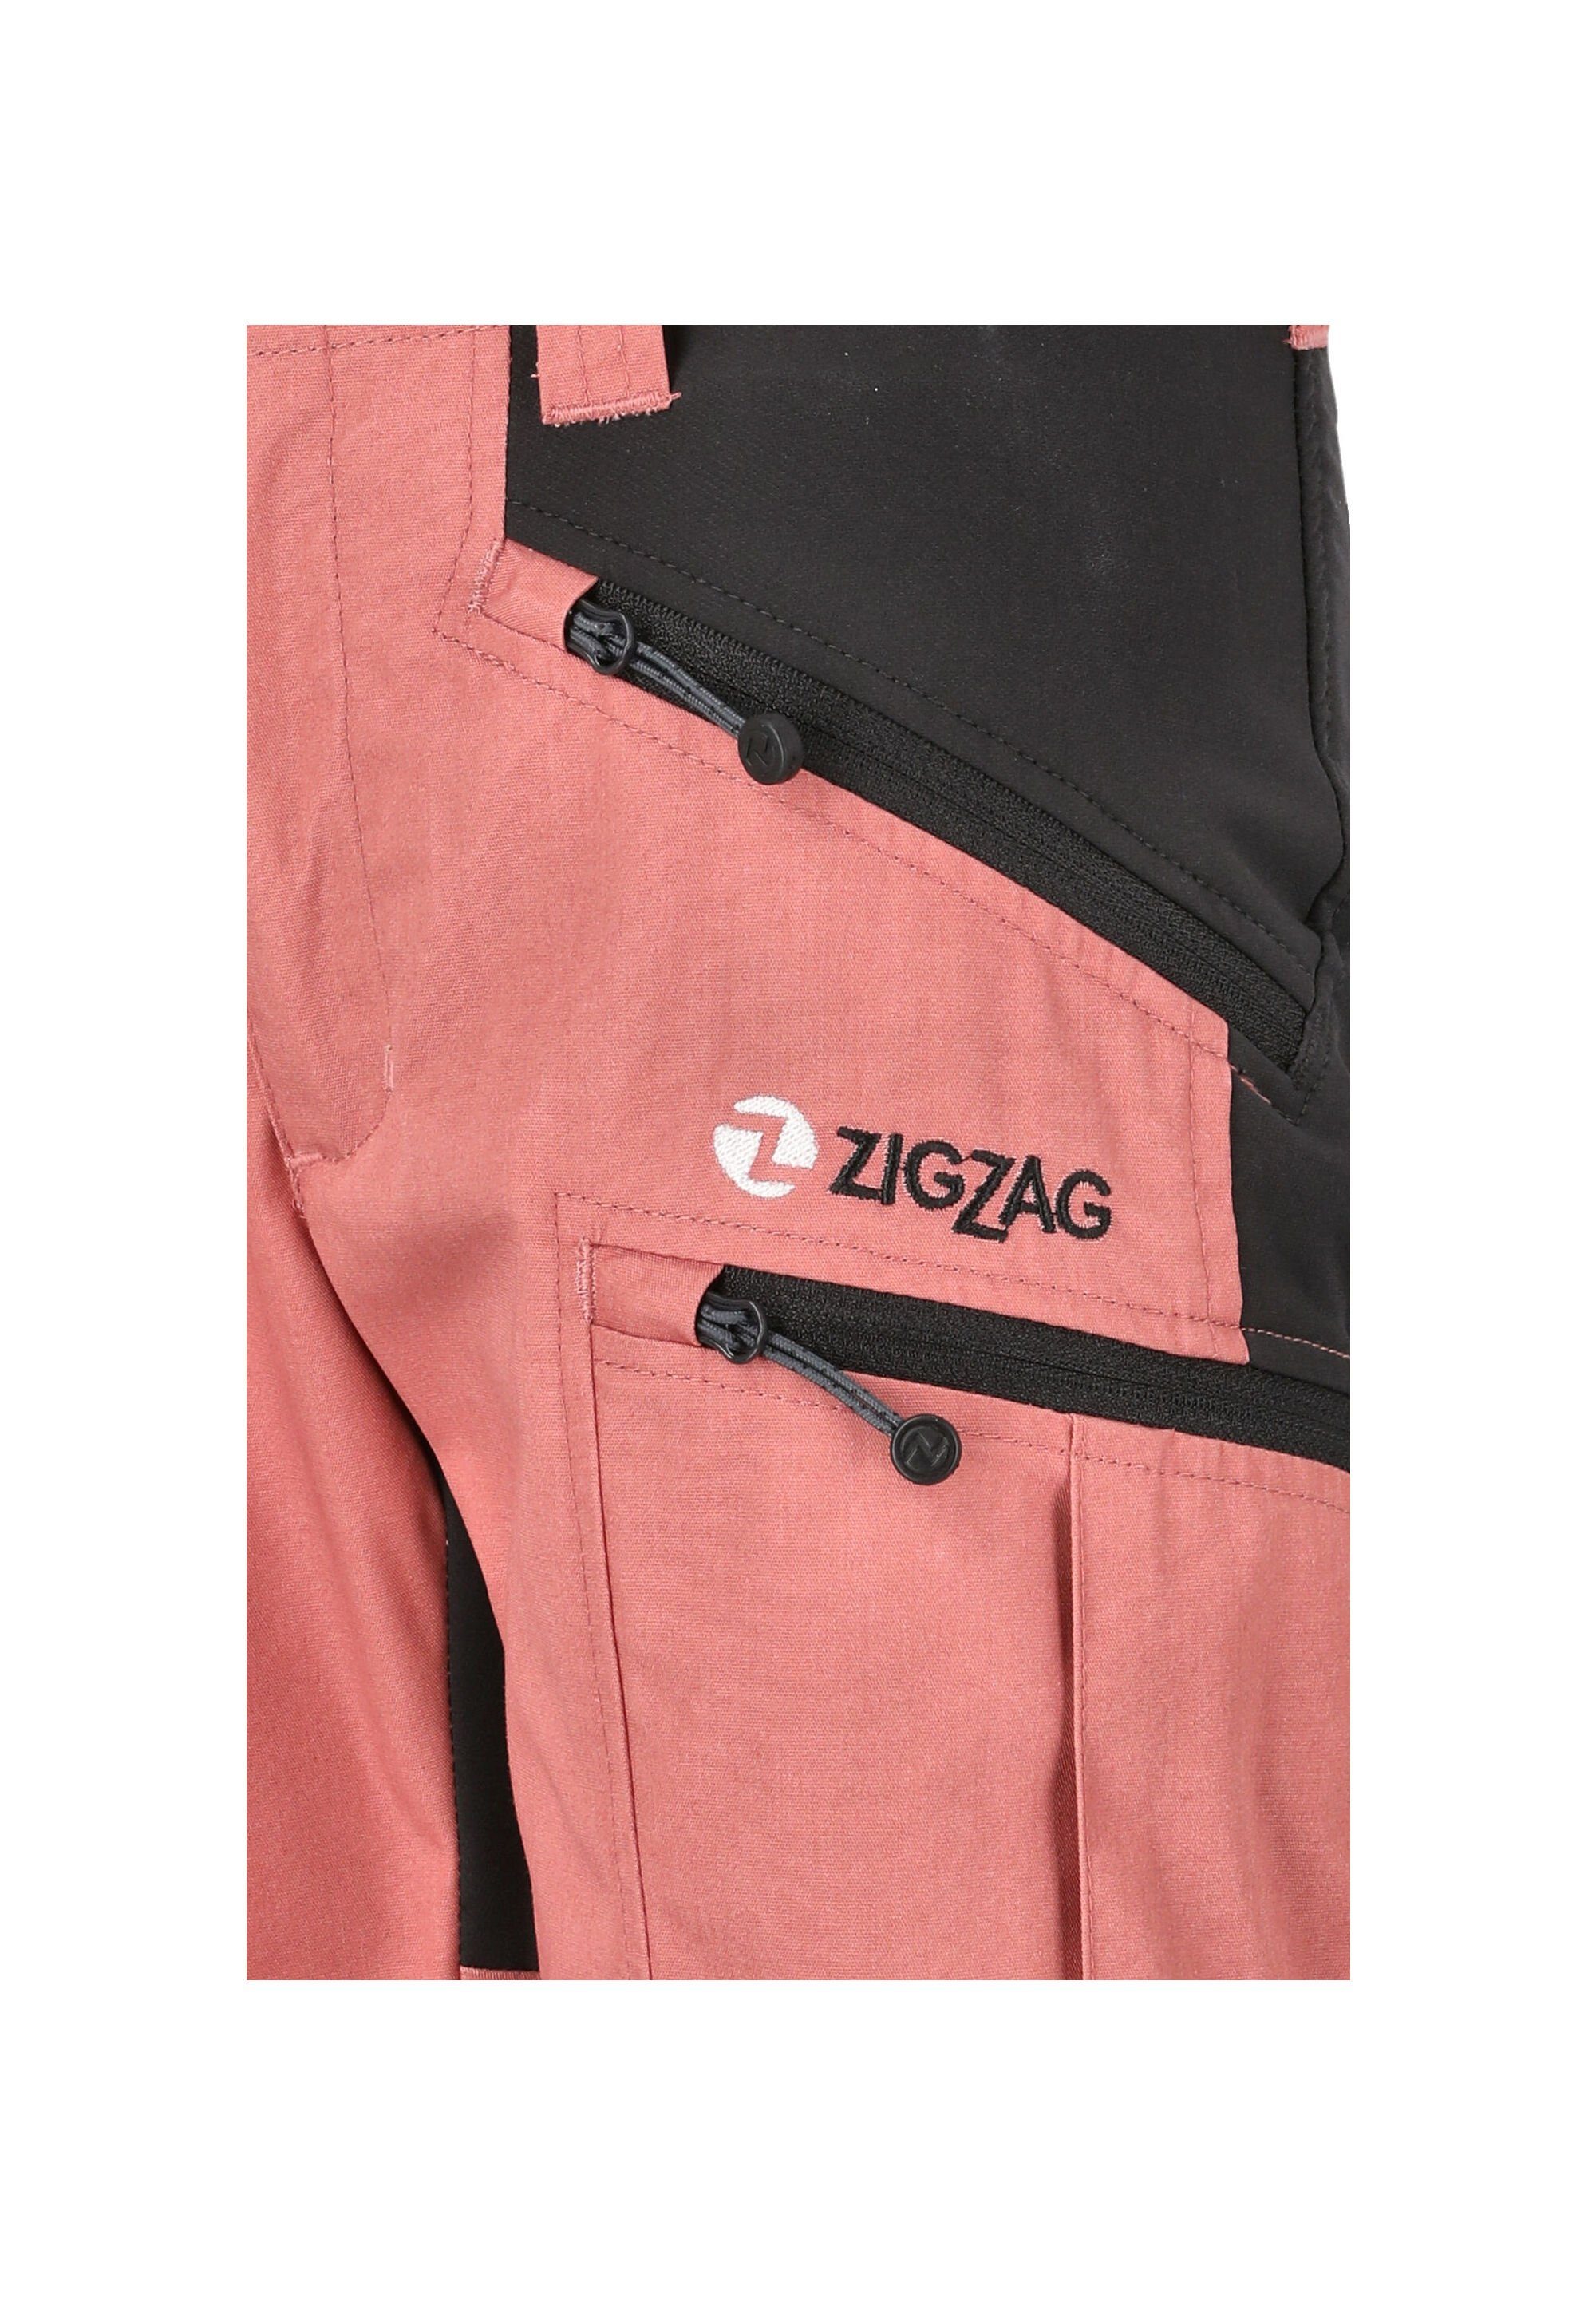 Shorts praktischem mit Dehnbund, Reißverschlusstaschen ZIGZAG dank Bono praktisch Besonders